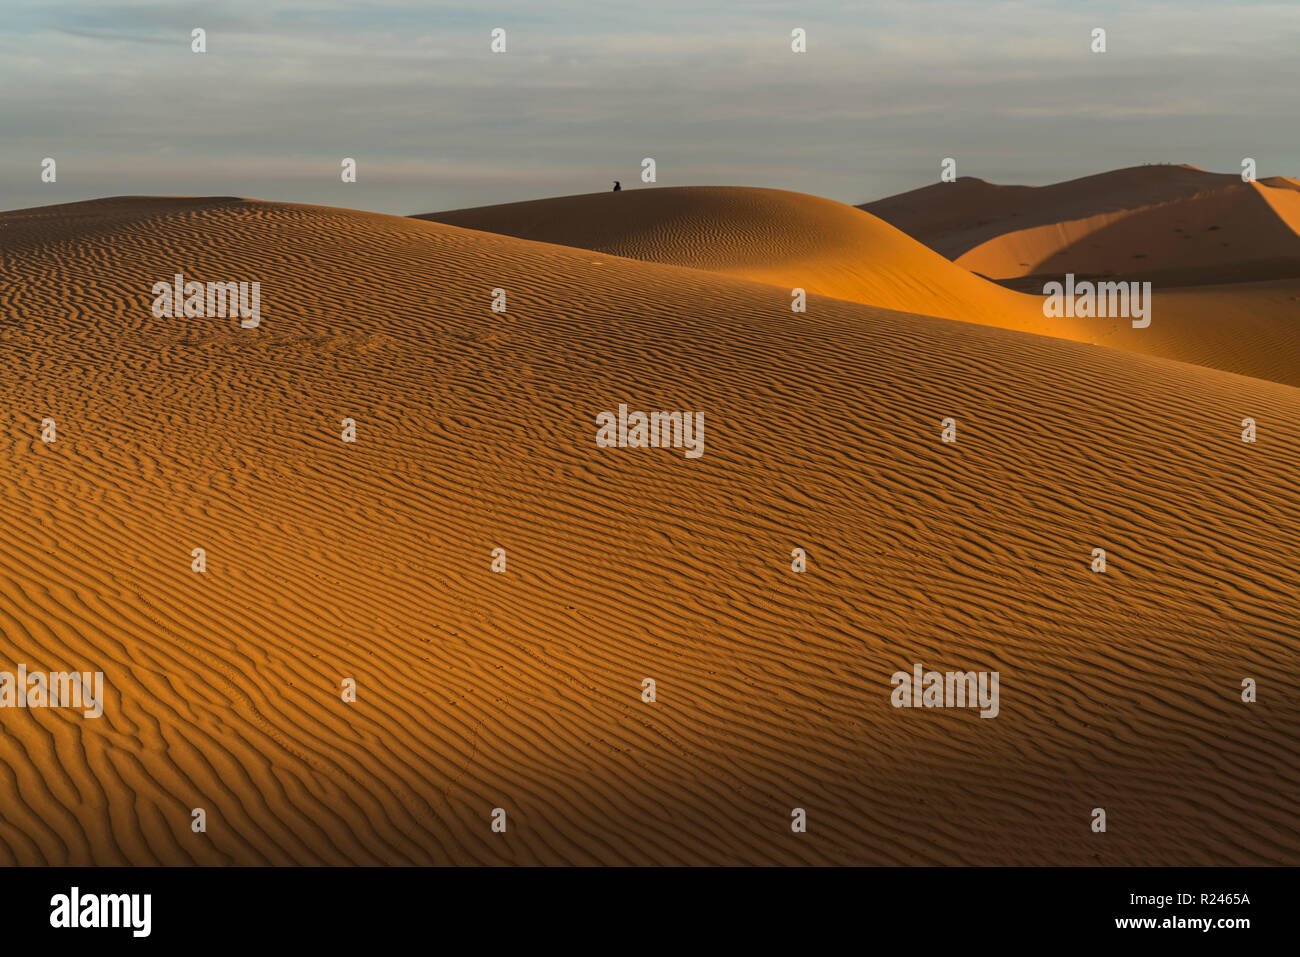 Sand dünen bei der Sahara Ancien Wüste, Merzouga, Maroc | dunes de sable dans le désert du Sahara, près de Merzouga, Royaume du Maroc, l'Afrique Banque D'Images